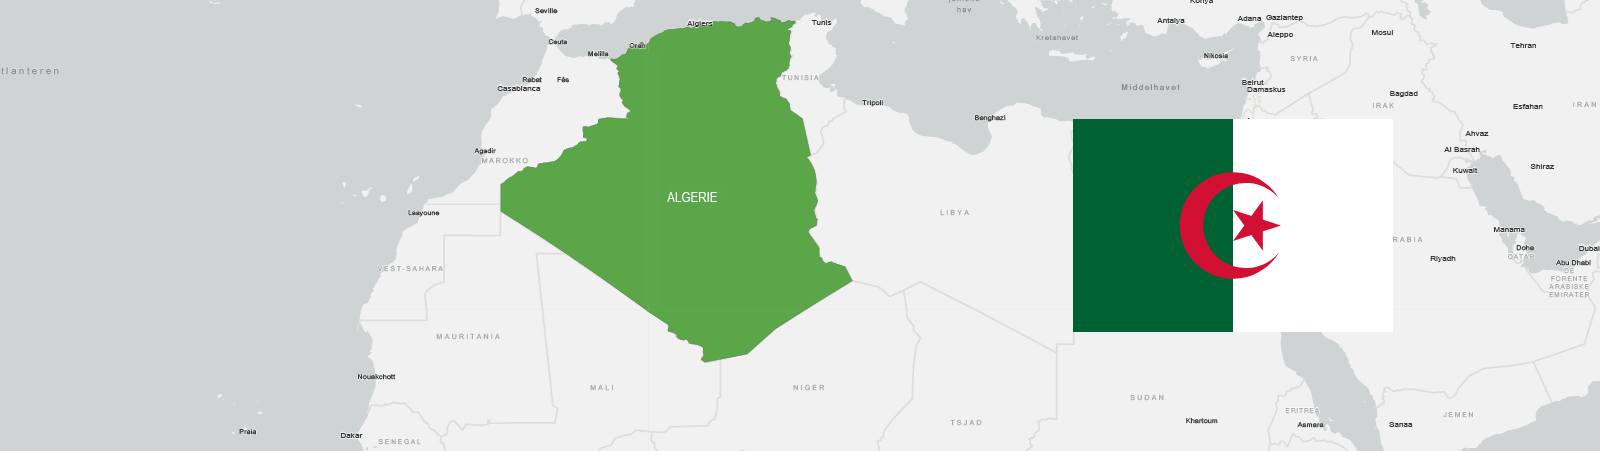 Algerie kart og flagg